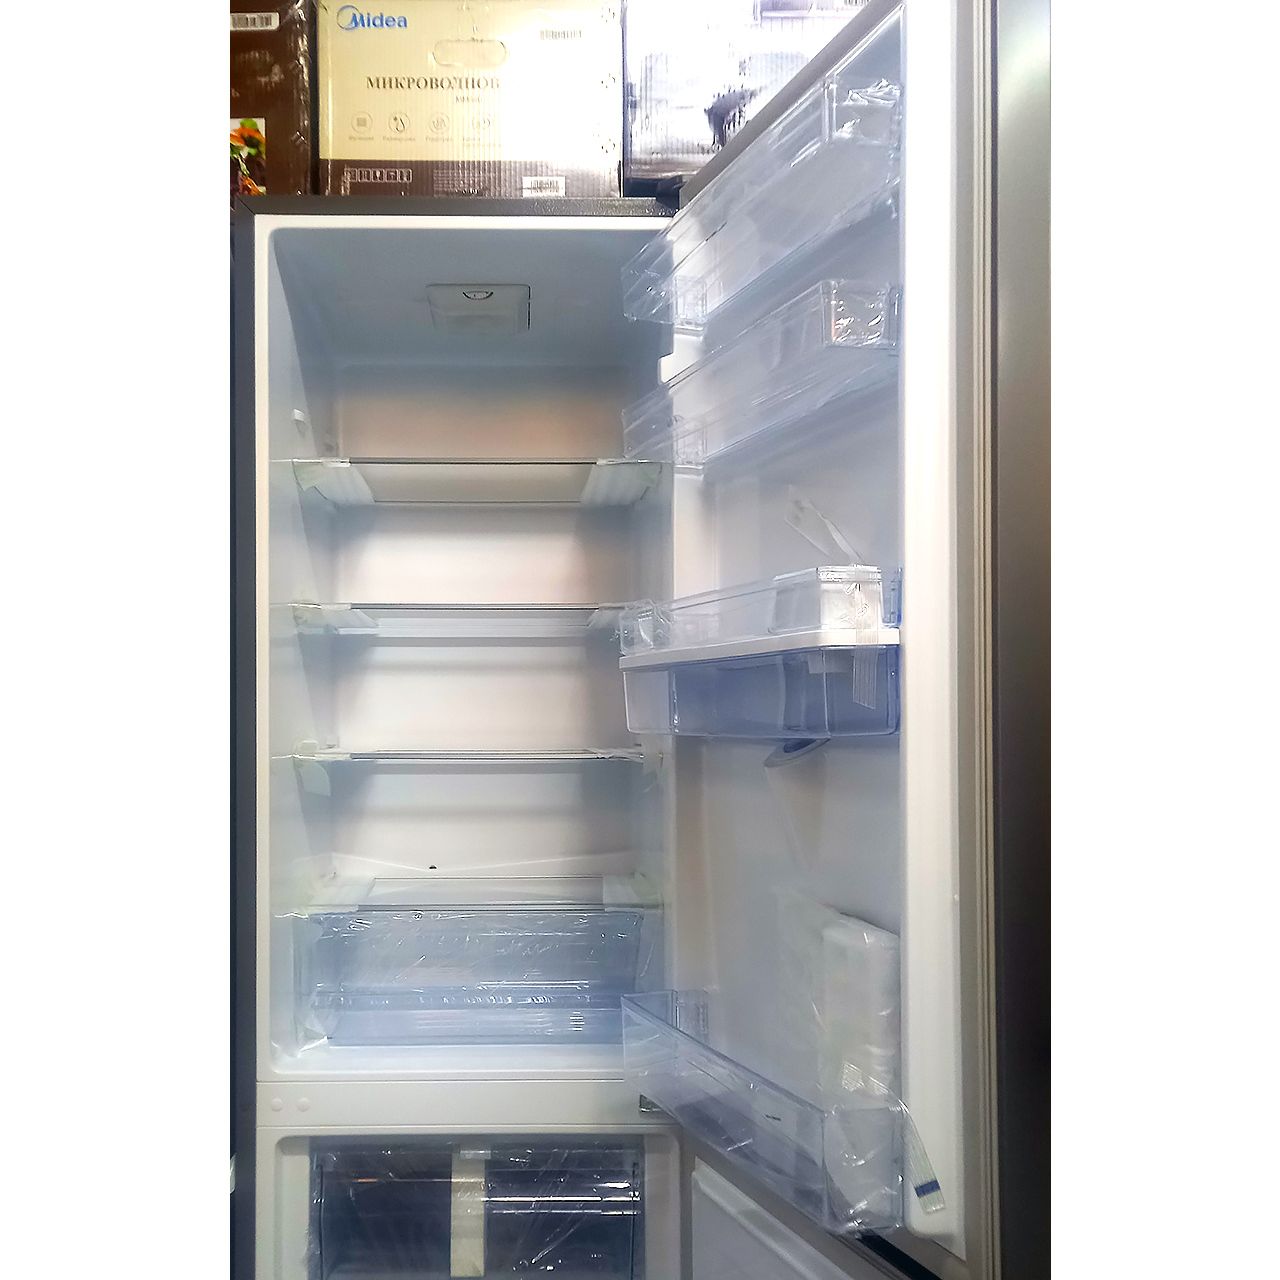 Холодильник двухкамерный Hisense 262 литра